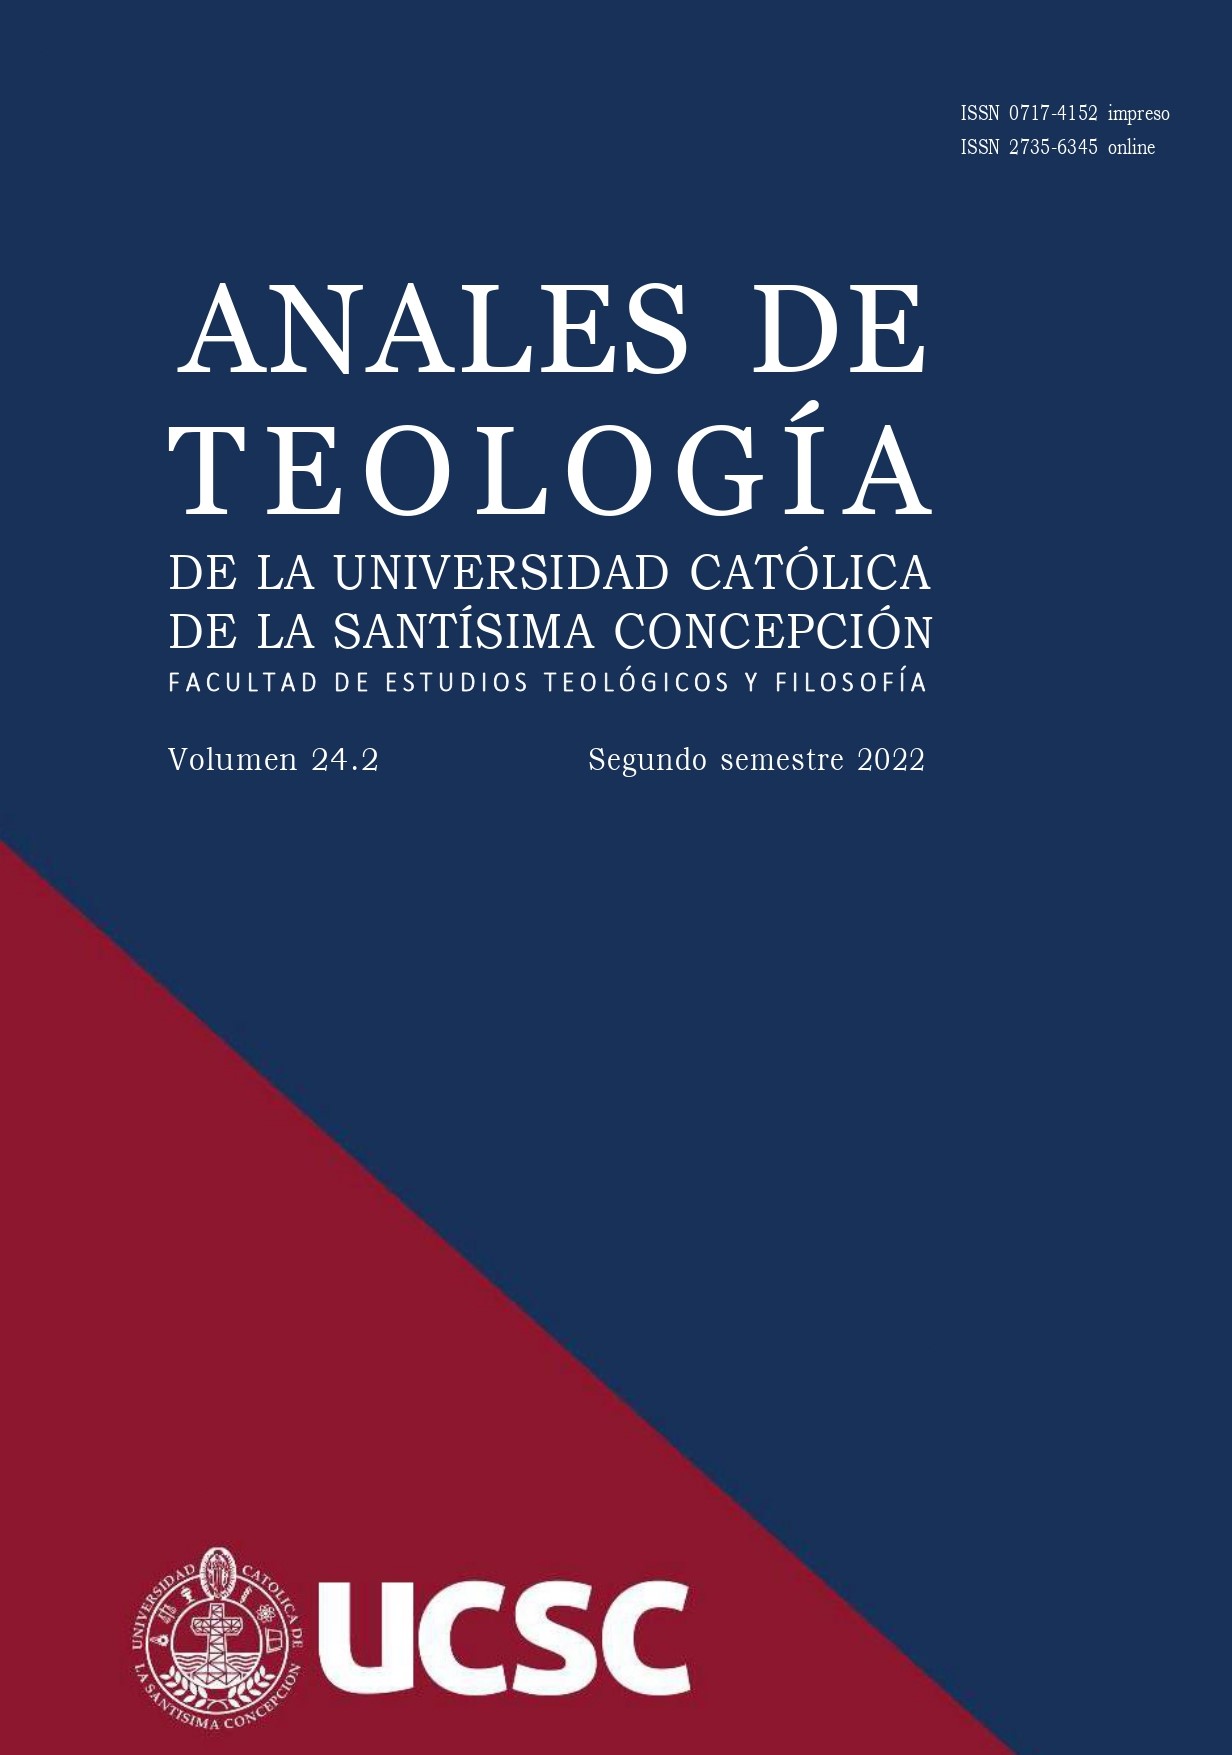 					Ver Vol. 16 Núm. 1 (2014): Anales de Teología |Enero - Junio 2014
				